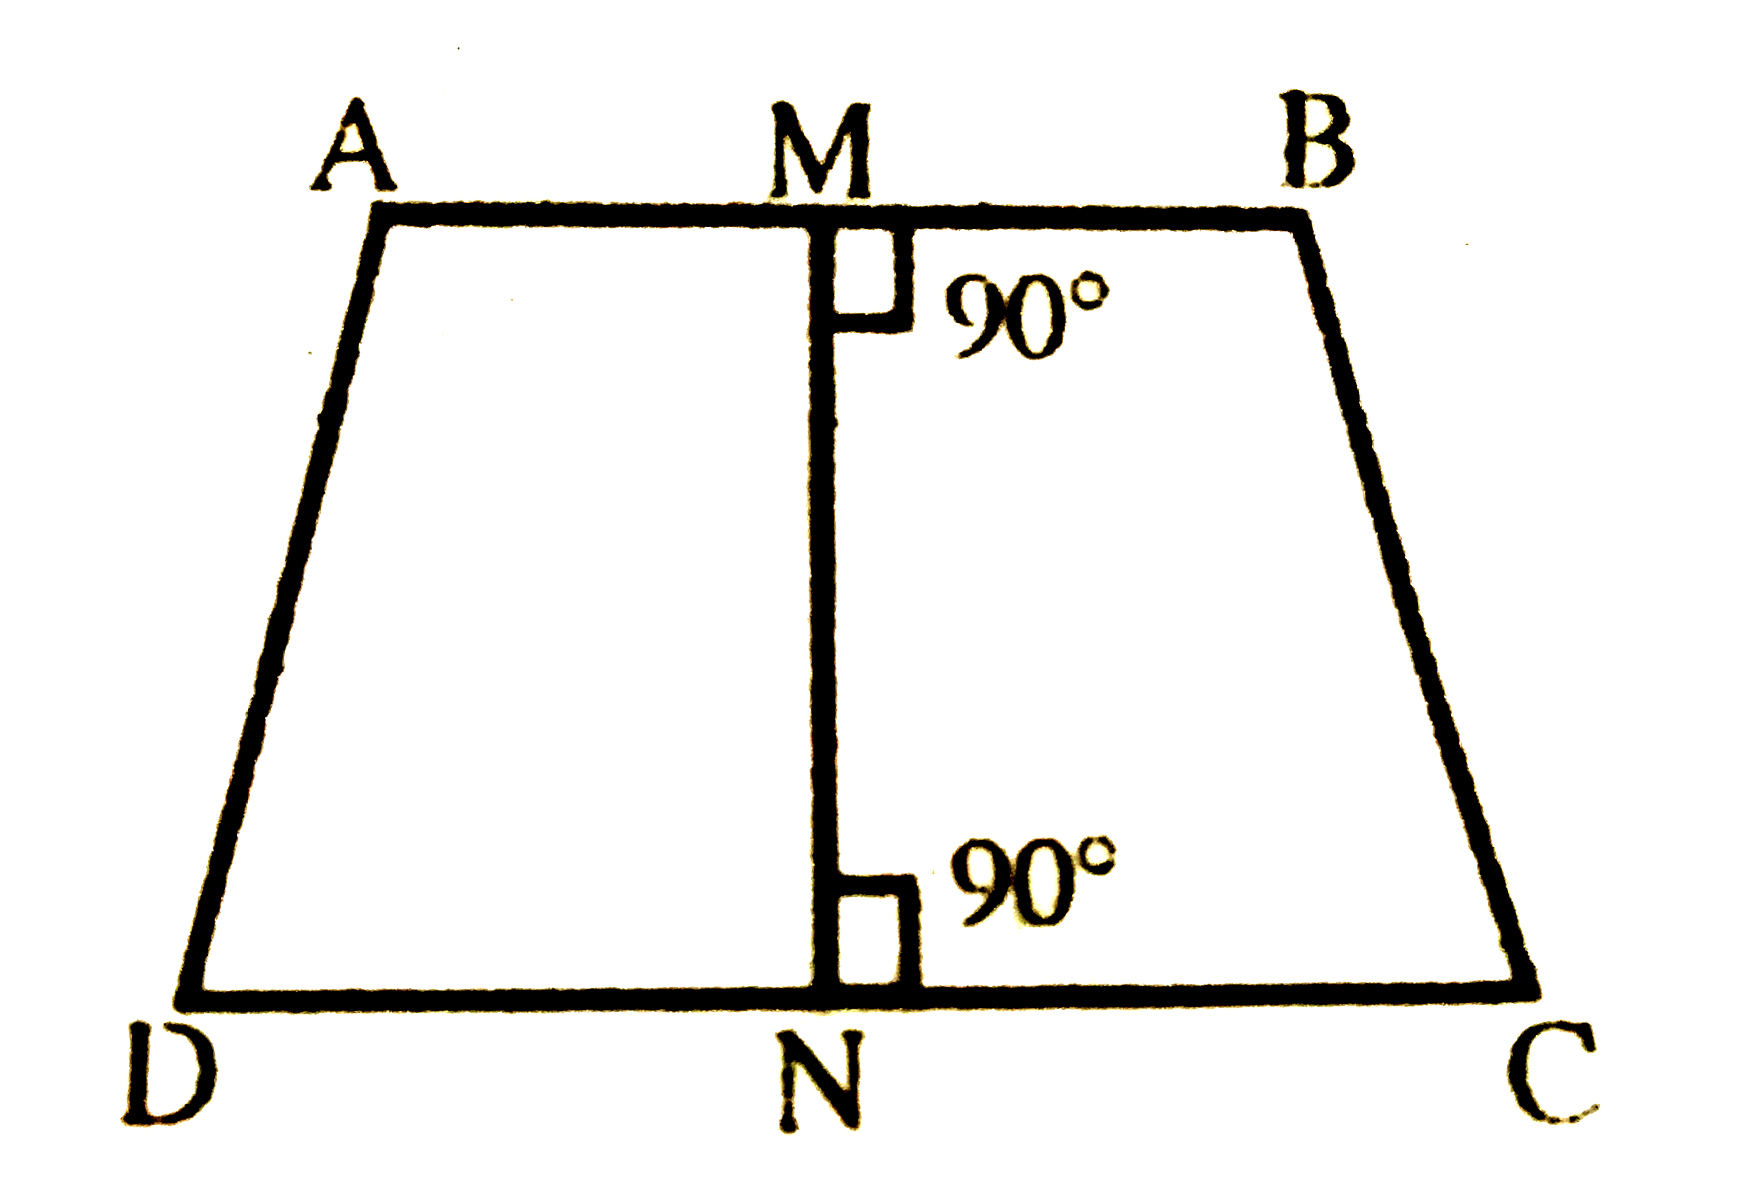 बगल के चित्र में चतुर्भुज ABCD की भुजाओं AB और CD के मध्य बिन्दुओं M तथा N को मिलनेवाली रेखाखण्ड दोनों पर लम्ब हैं | साबित करें कि चतुर्भुज की दूसरी भुजाएँ बराबर है |